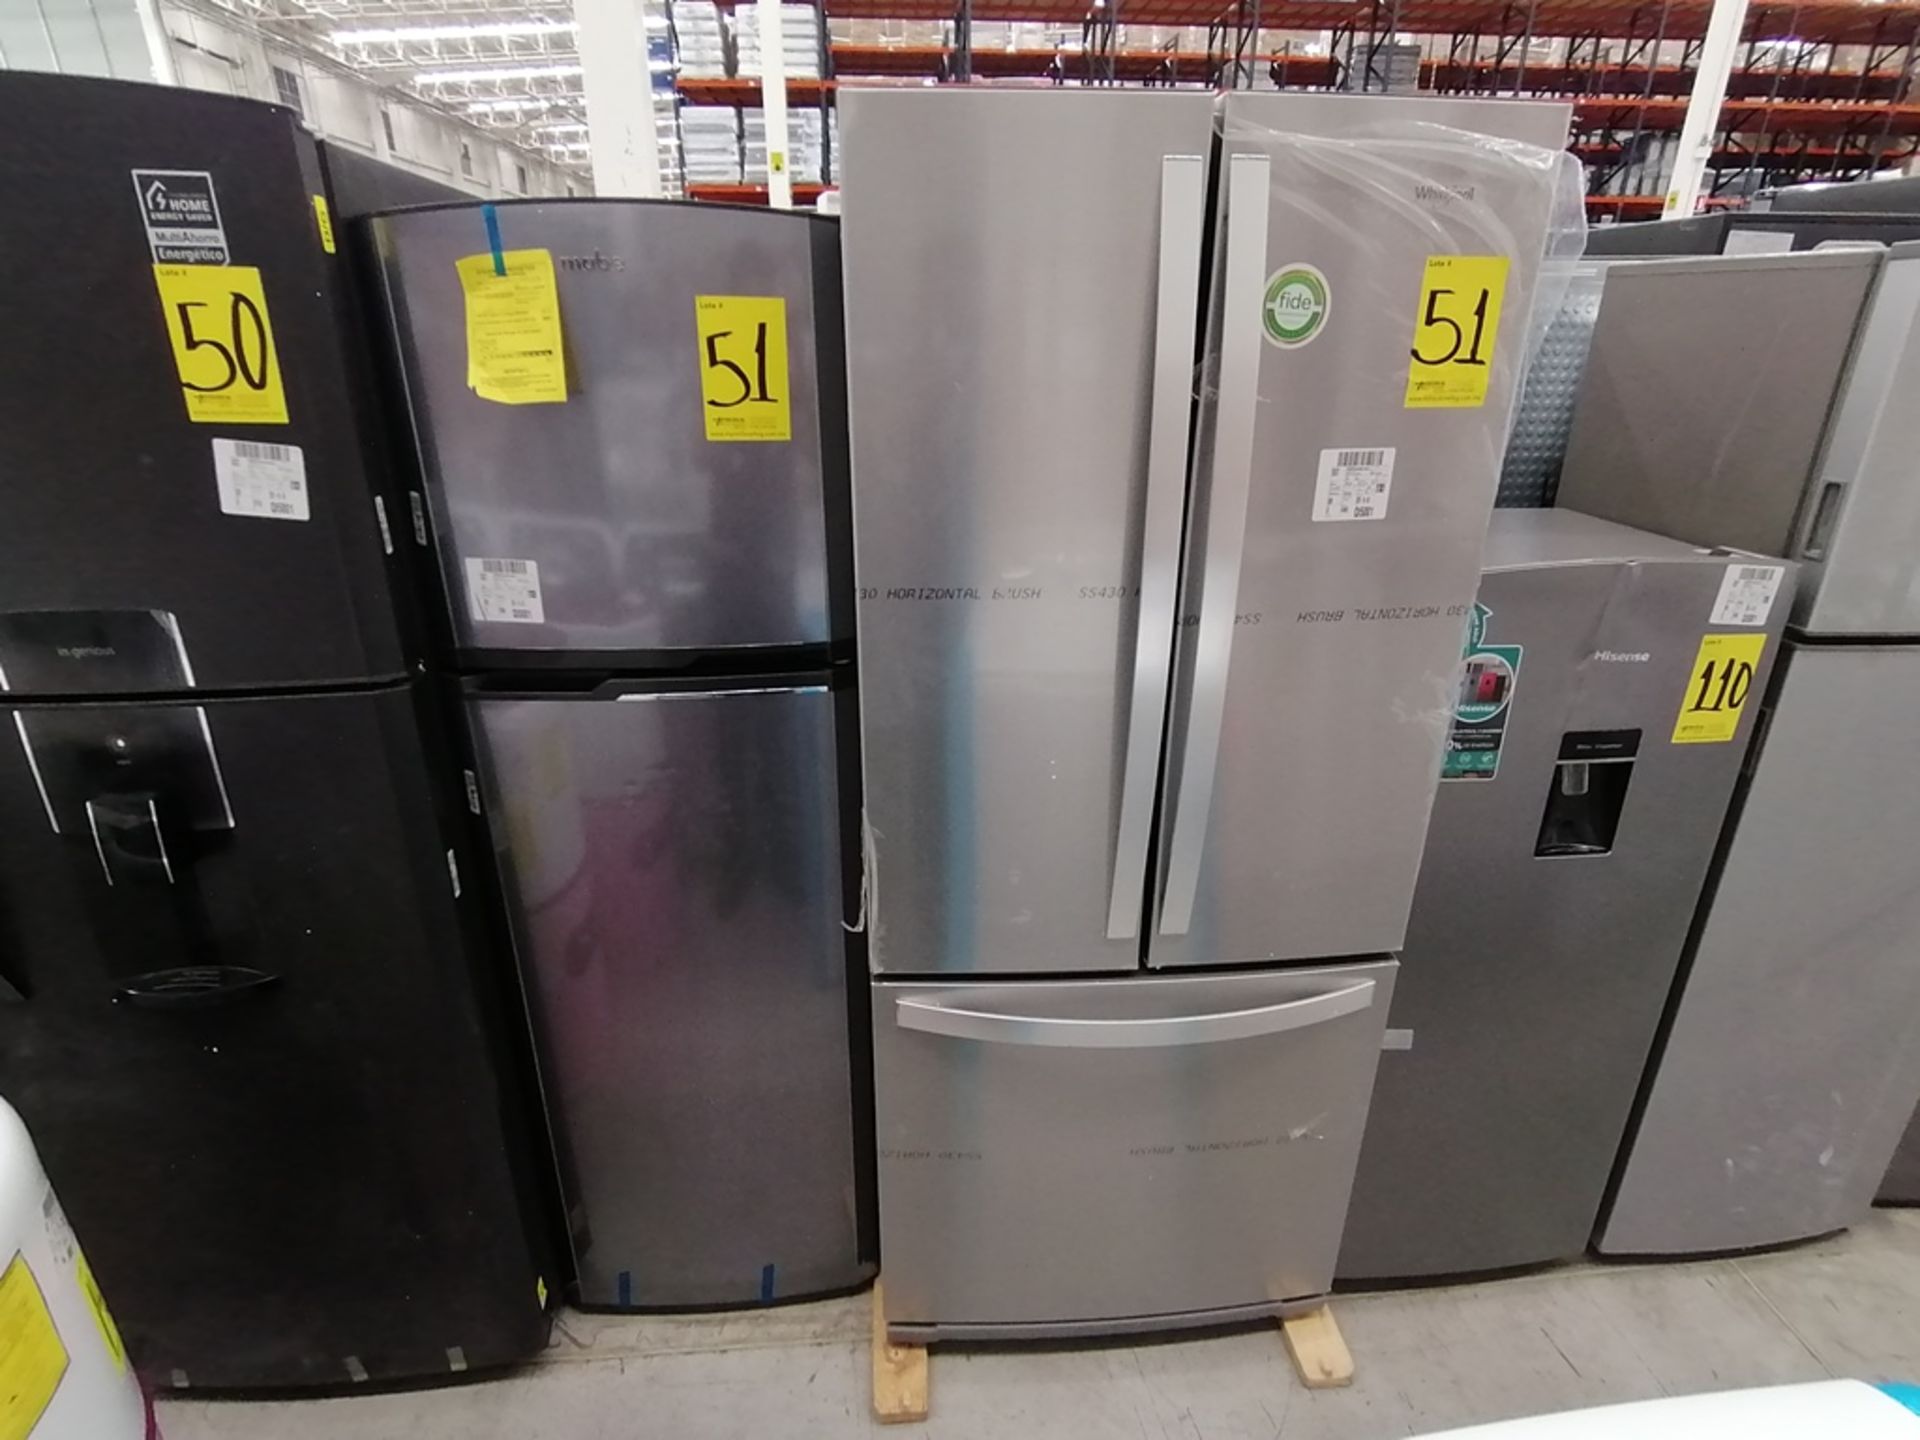 Lote de 2 refrigeradores incluye: 1 Refrigerador, Marca Mabe, Modelo RMA1025VMX, Serie 2111B618024, - Image 10 of 15